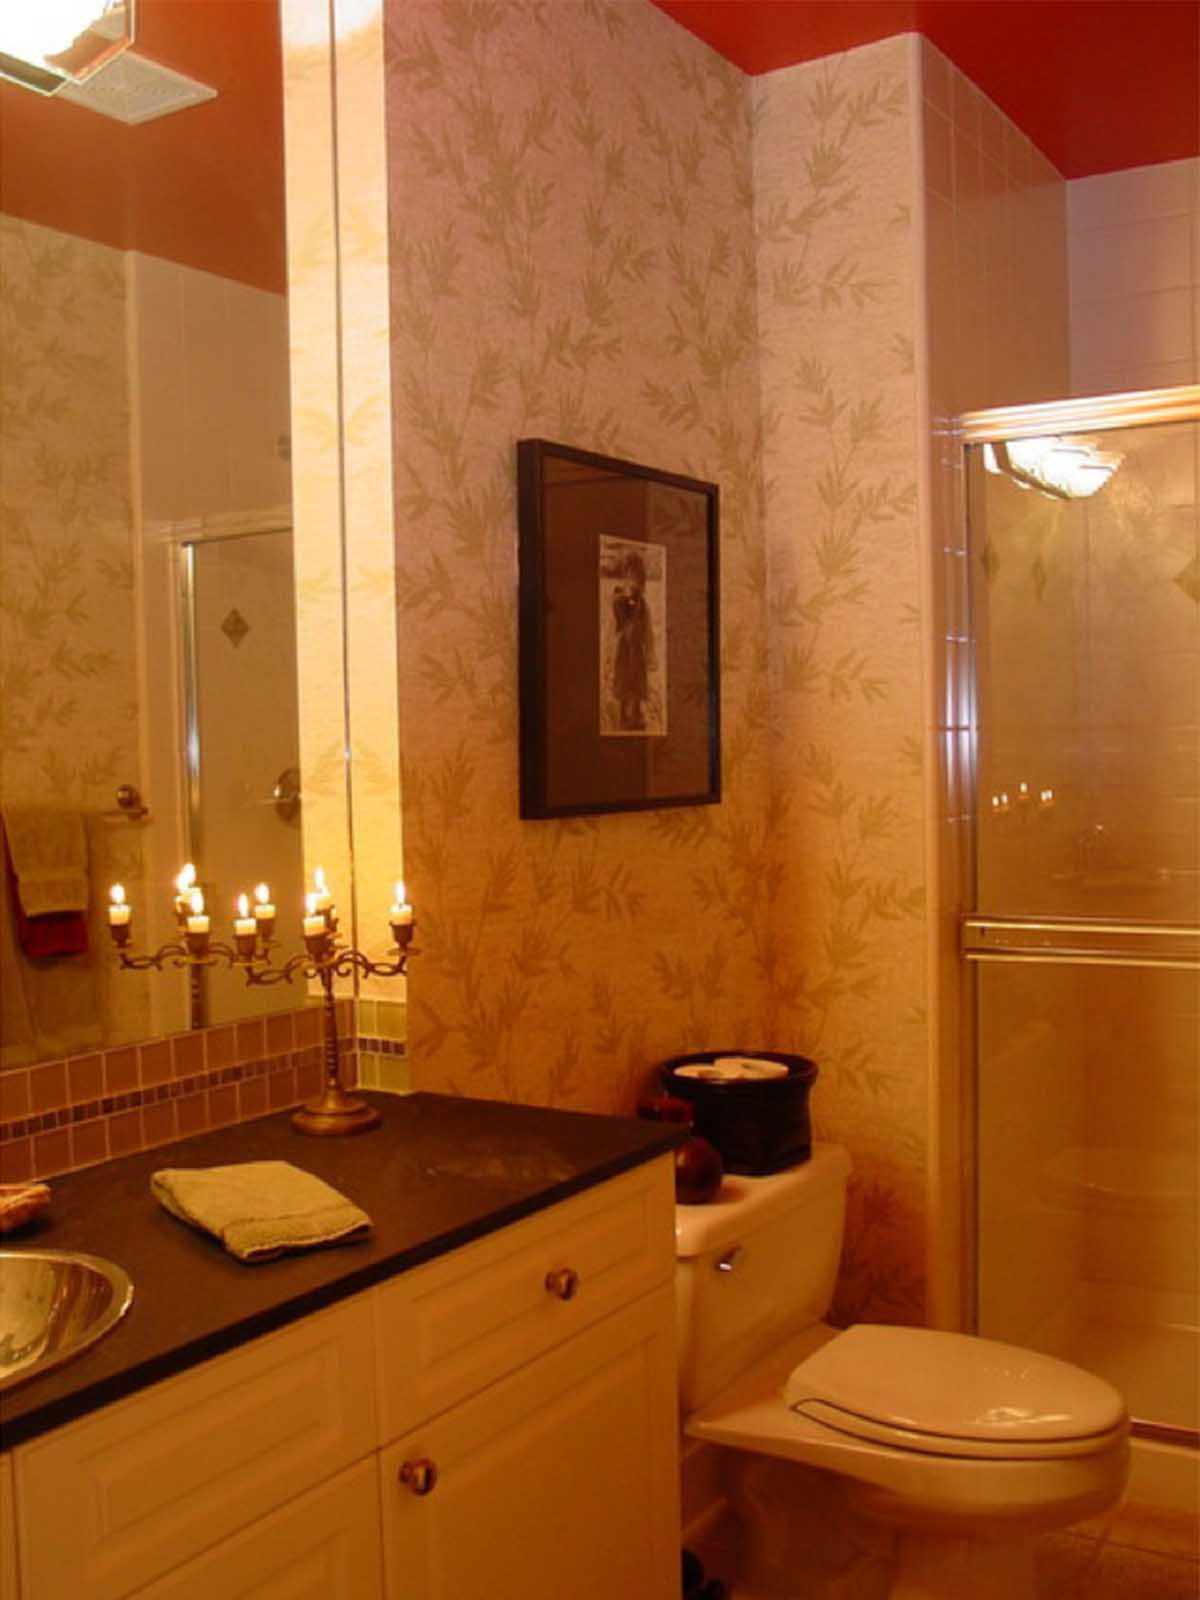 Kirkland Bathroom Vanities
 Bedrooms and Bathrooms Helga Simmons Interior Design